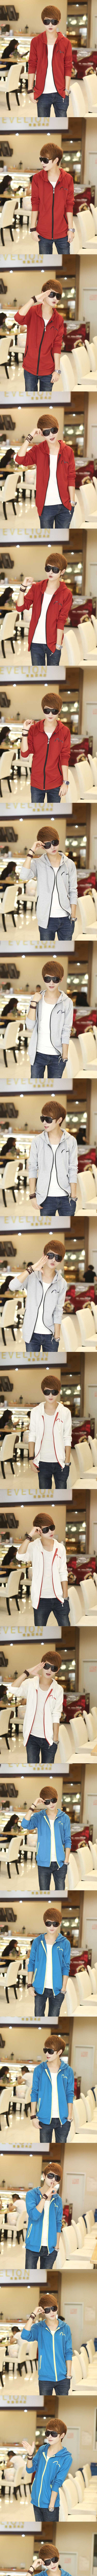 jual jaket pria model korea dengan bahan katun import berkualitas sehingga nyaman di kenakan , temukan koleksi jaket pria korea terlengkap lain nya hanya di store.pakaianfashionpria.com